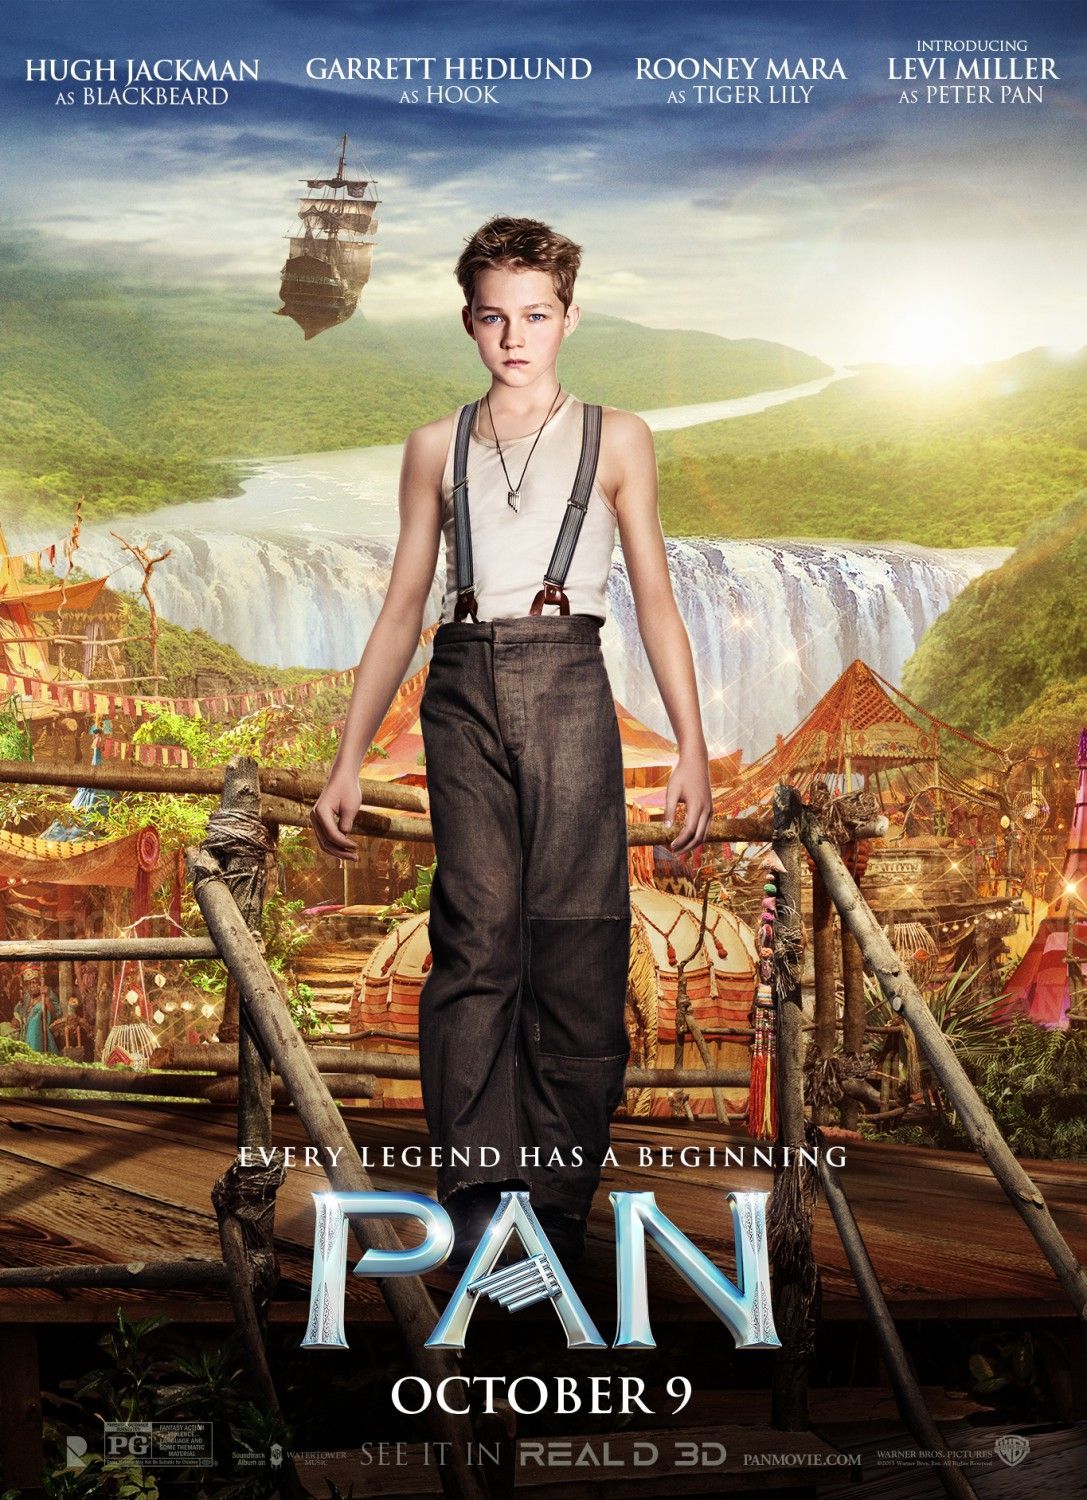 Levi Miller as Pan in Pan